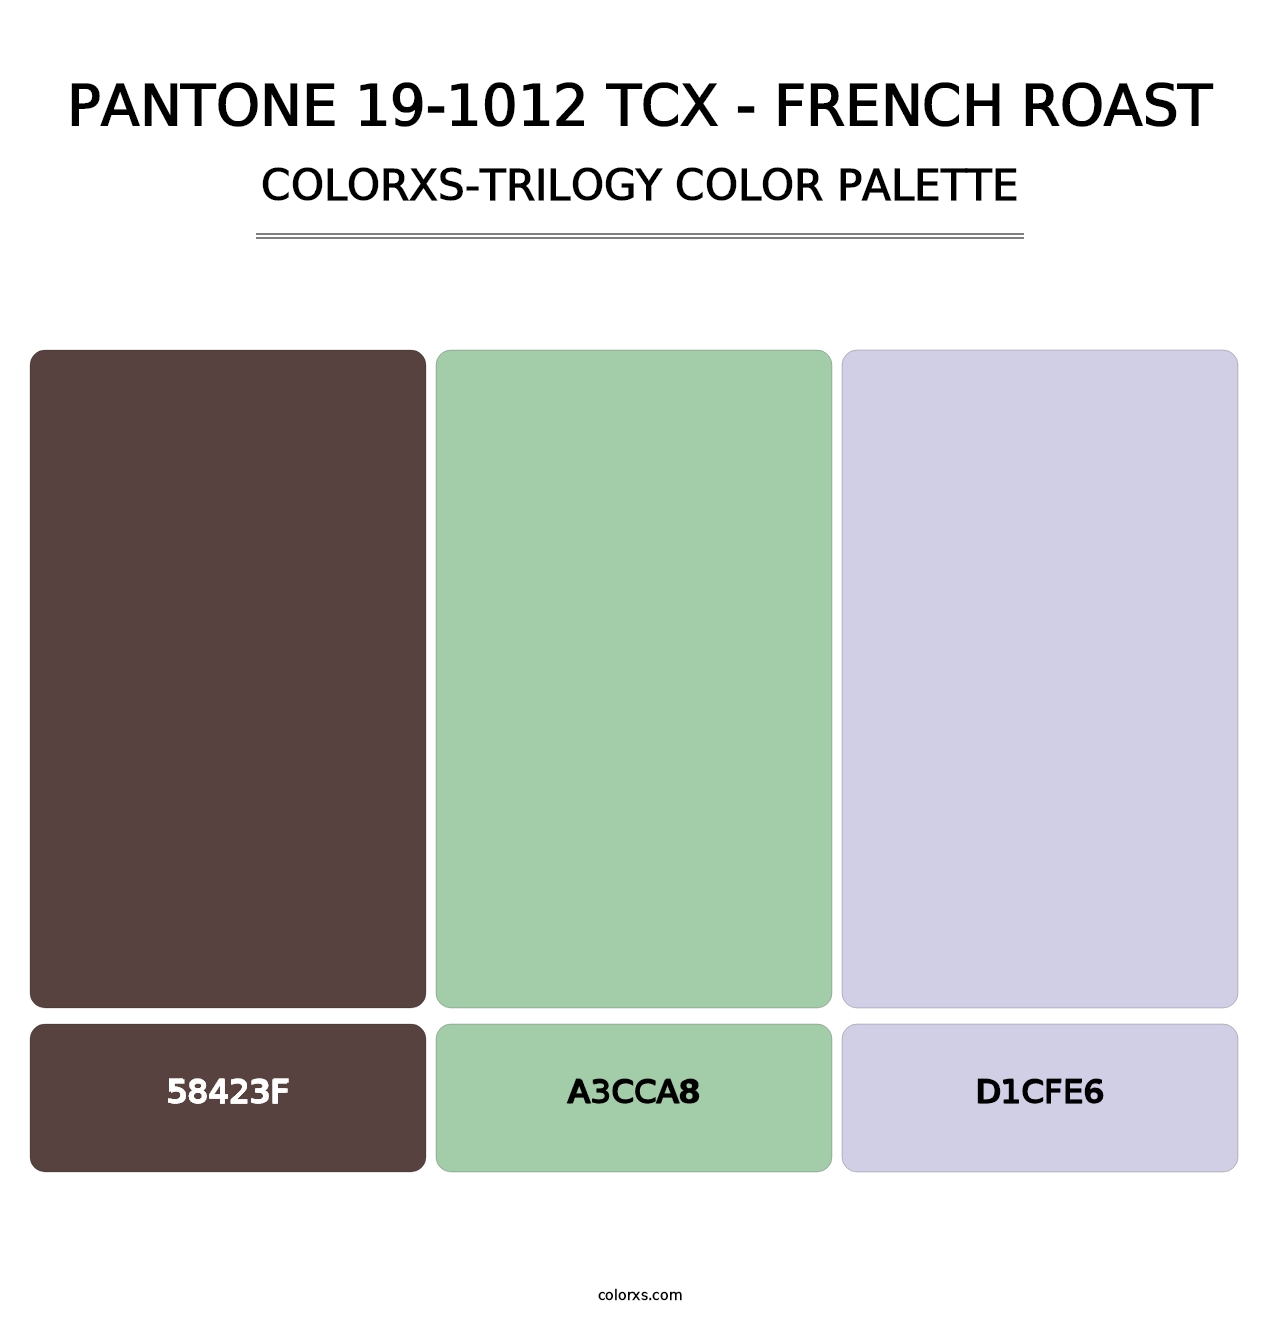 PANTONE 19-1012 TCX - French Roast - Colorxs Trilogy Palette